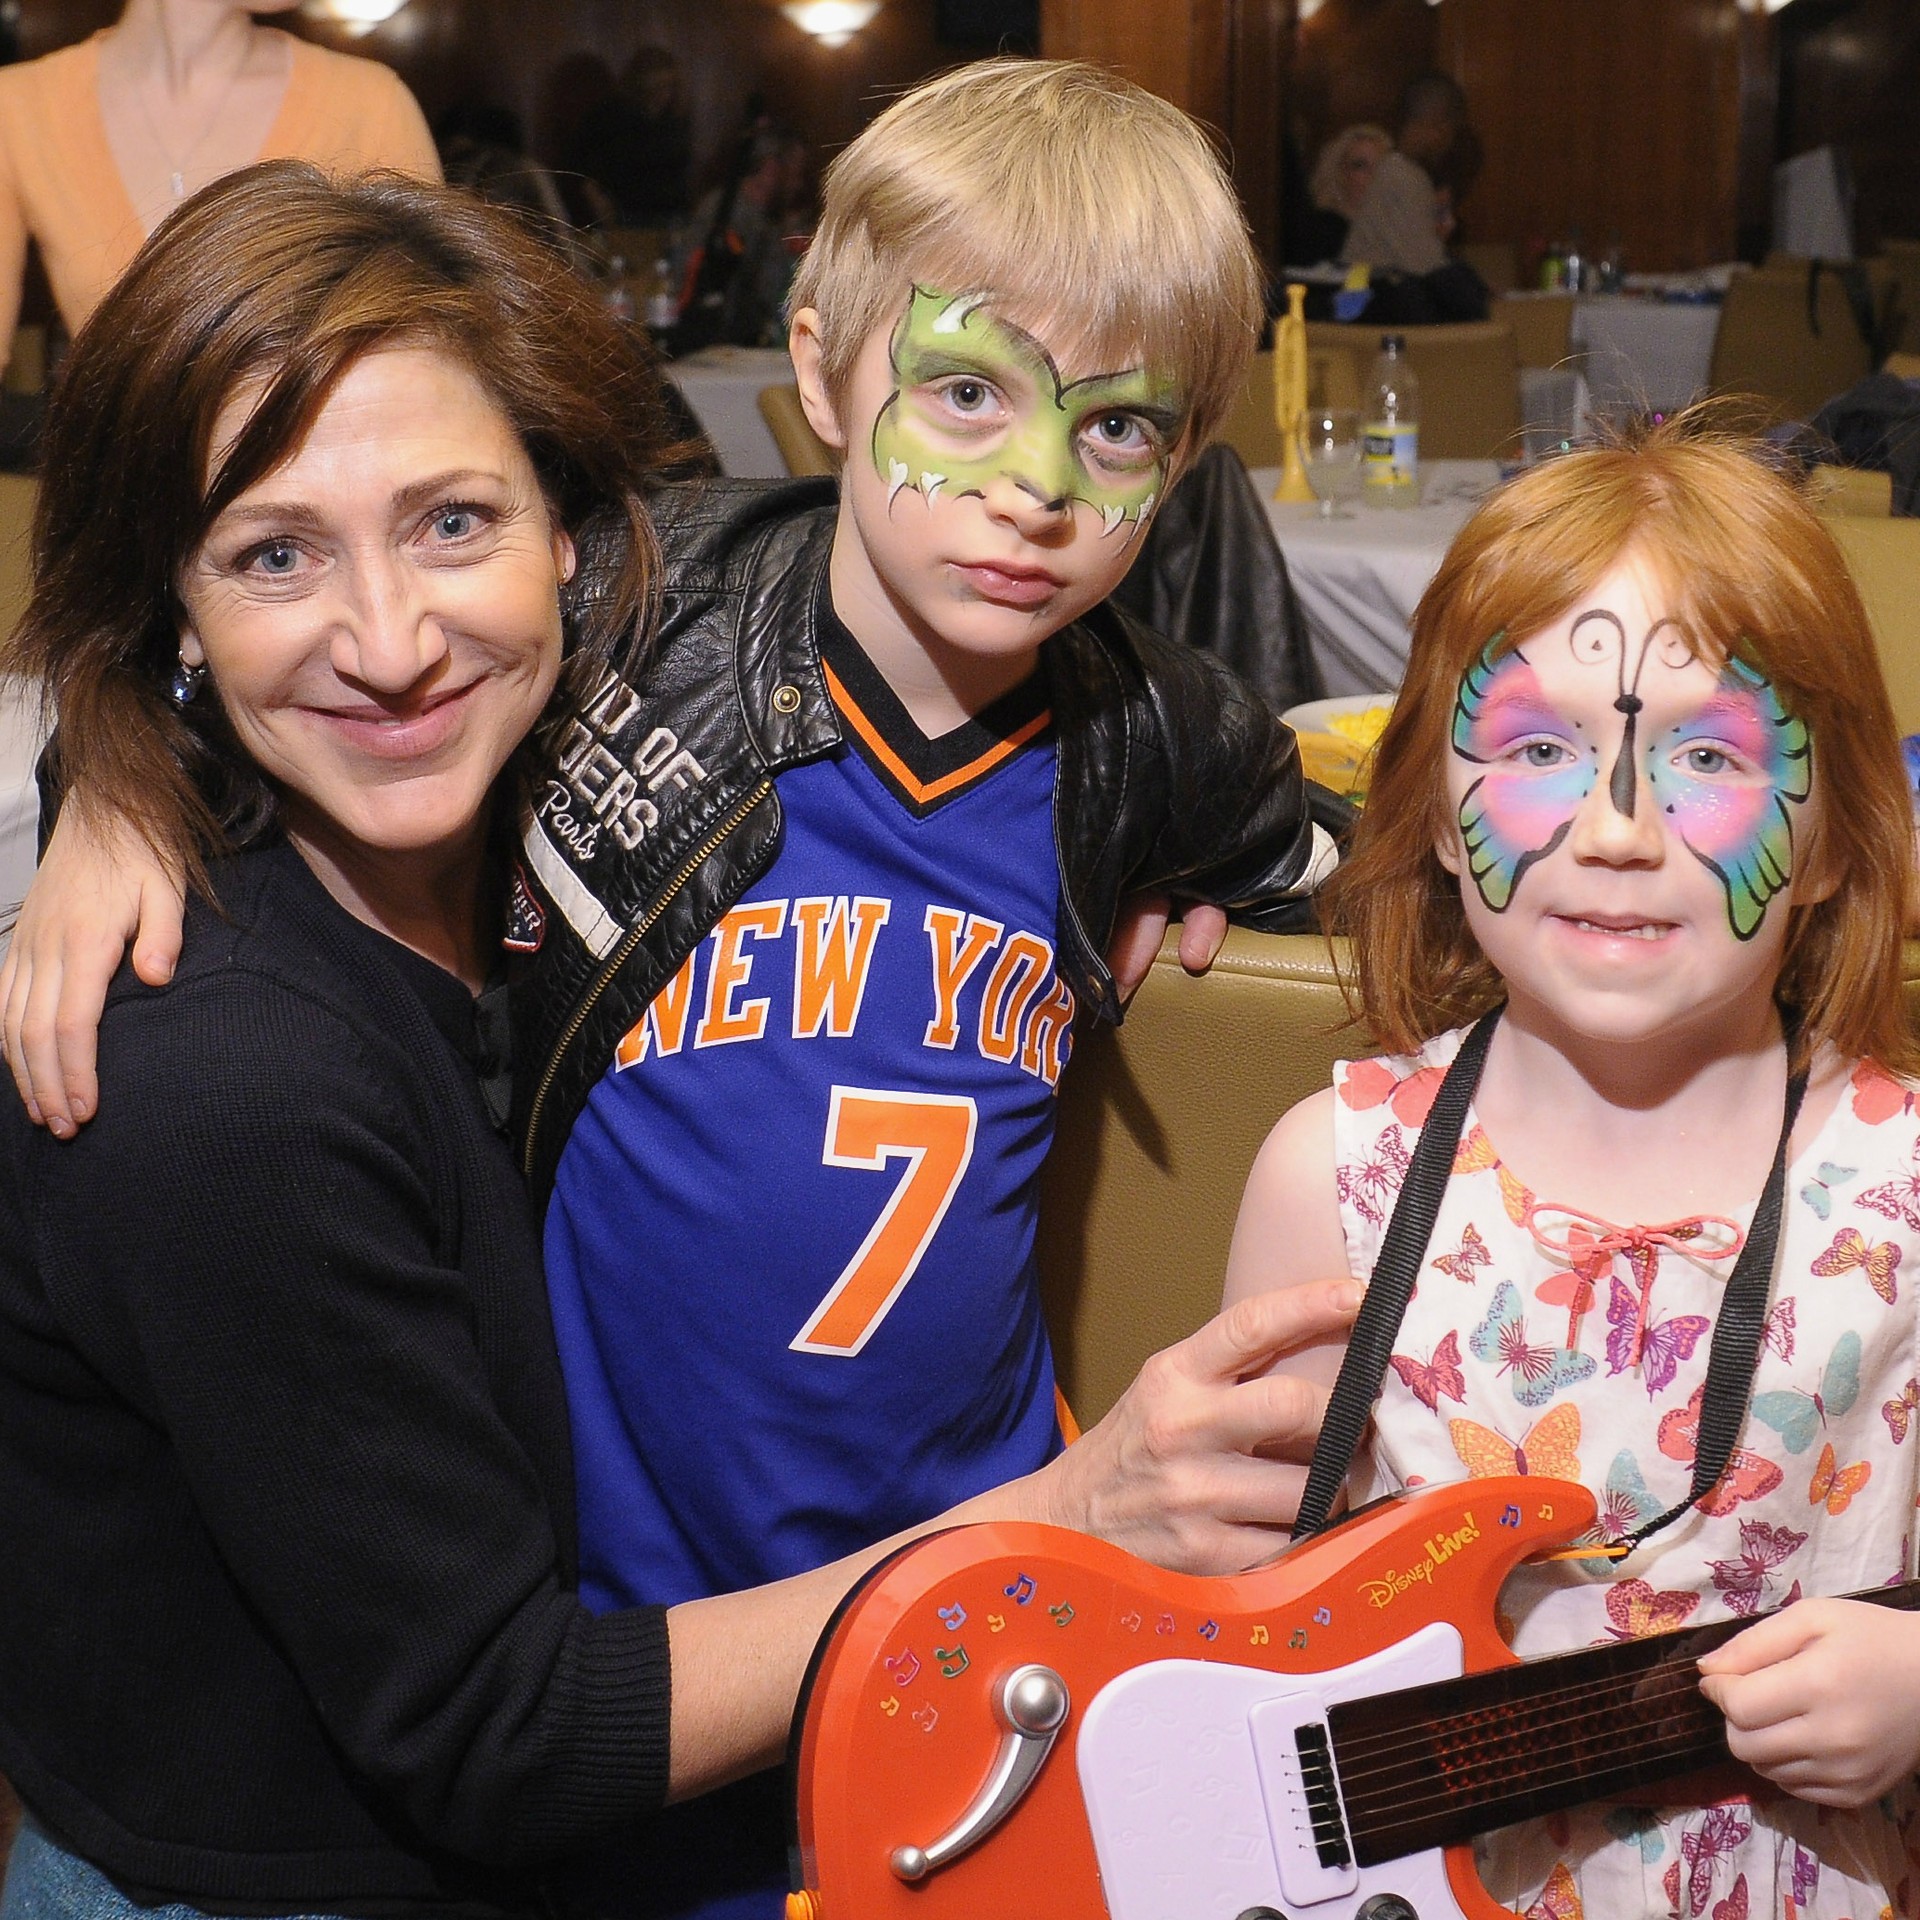 A atriz Edie Falco é quem cria os filhos, Anderson e Macy. (Foto: Getty Images)